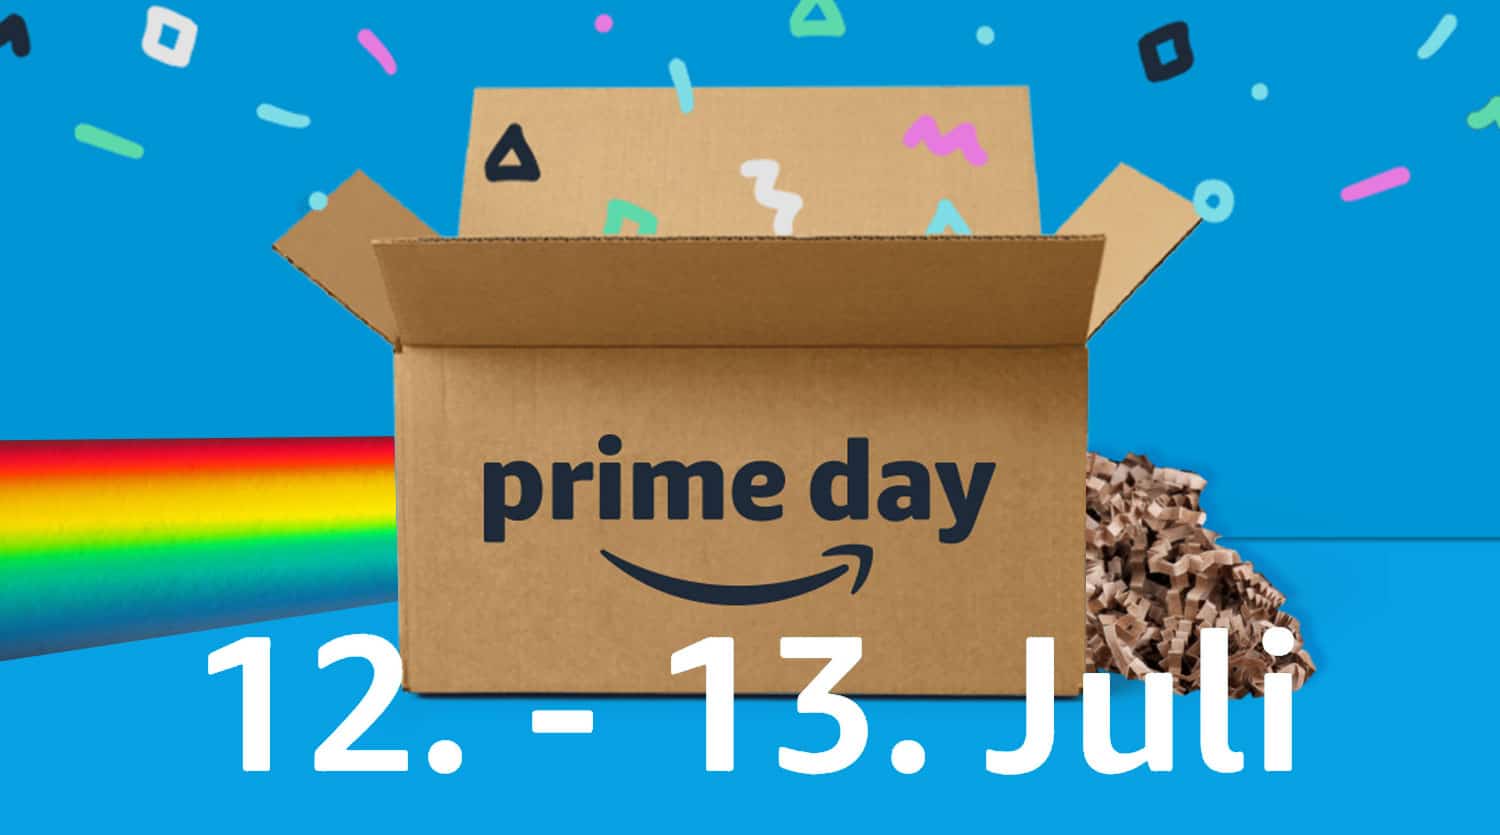 Amazon-Prime-Day-2022-Mega-Verkaufsevent-am-12-13-Juli-2022-